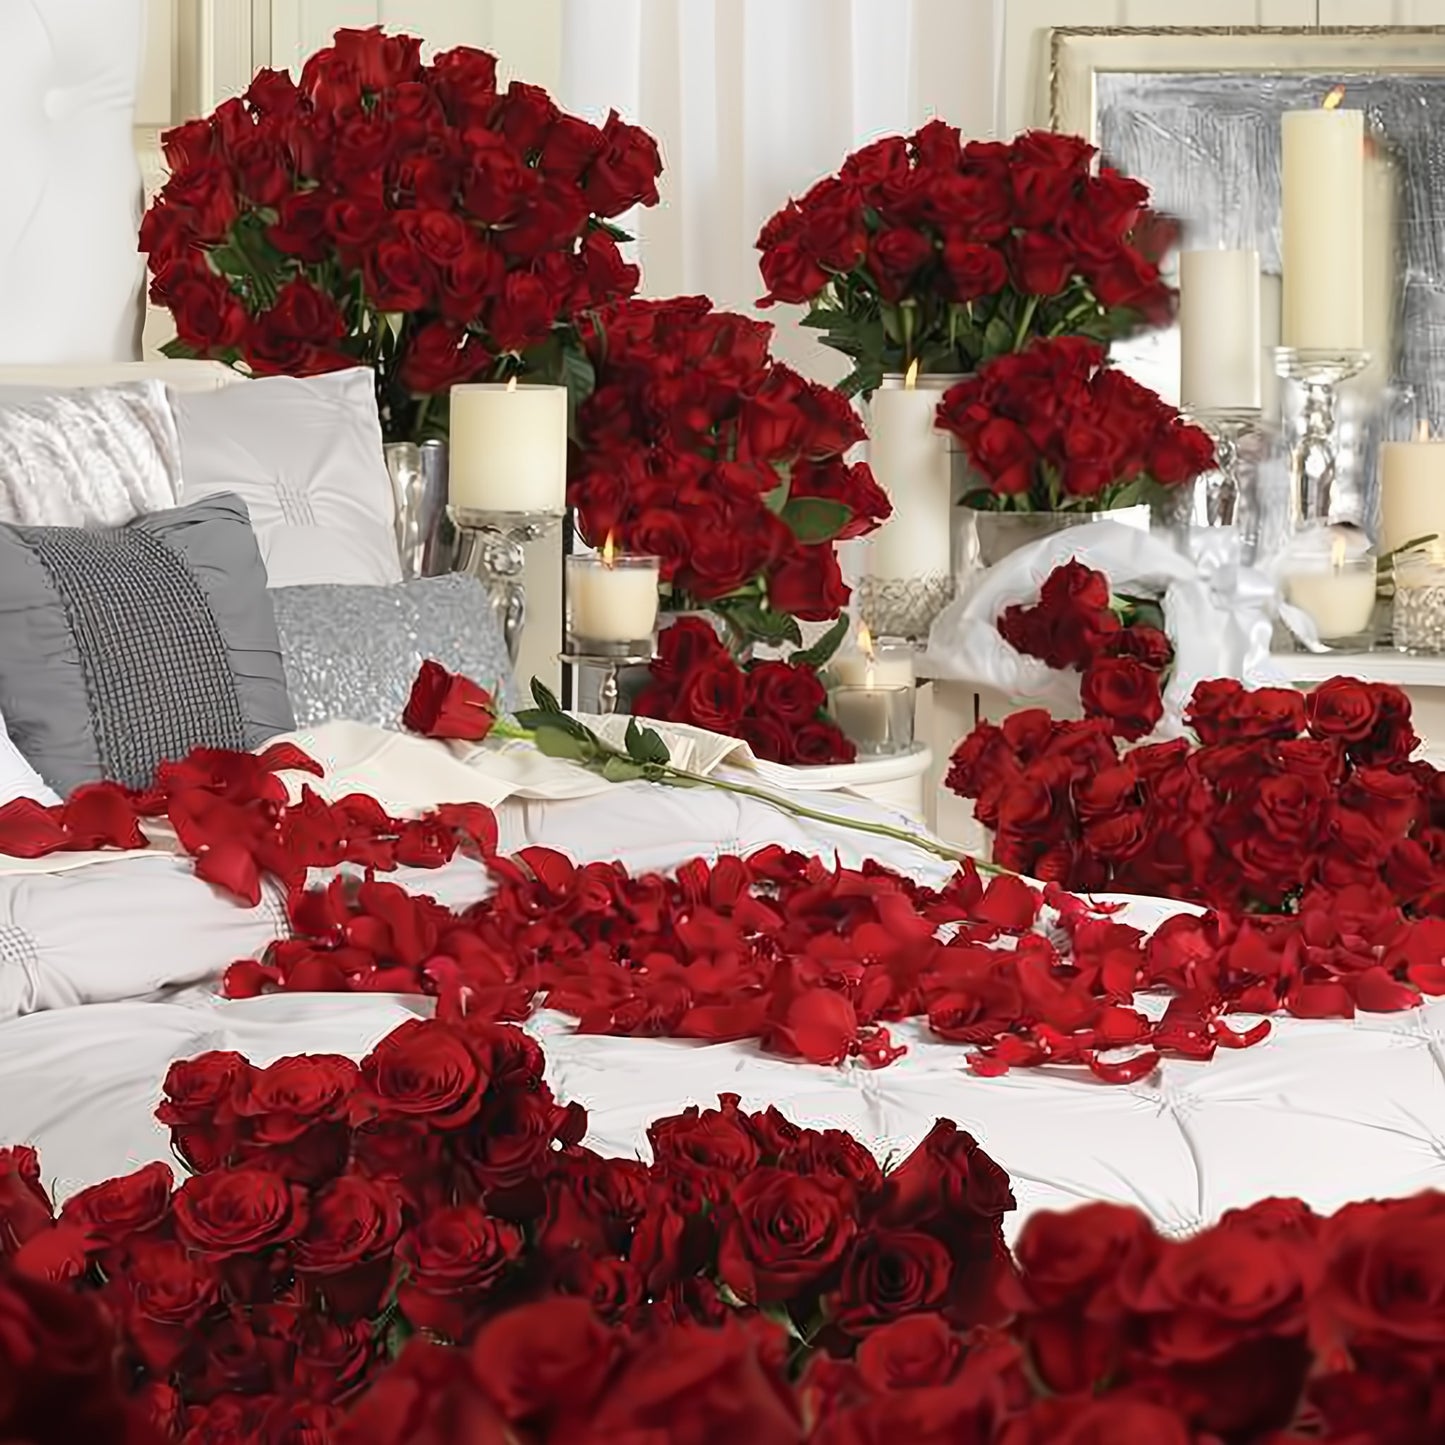 1,000 Long Stem Red Roses - Floral Arrangement - Flower Delivery Brooklyn